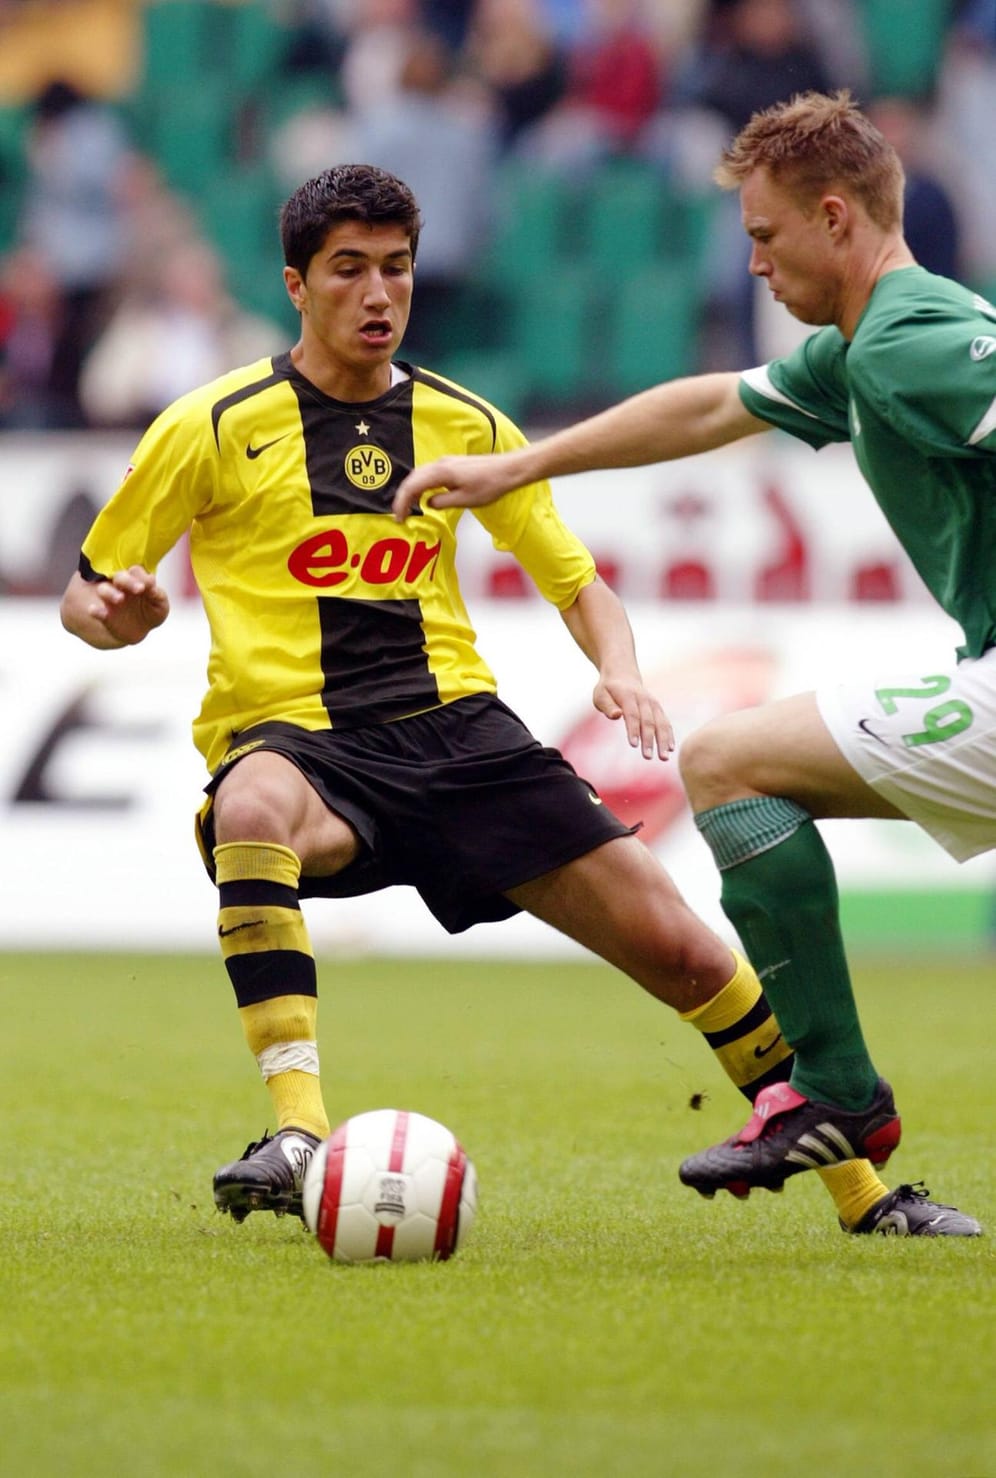 Nuri Sahin (Borussia Dortmund): Der frühere BVB-Star wurde nun von Moukoko abgelöst. Am 6. August 2005 gab Sahin sein Debüt in der Bundesliga gegen den VfL Wolfsburg und war an diesem Tag 16 Jahre, 11 Monate und 1 Tag alt.